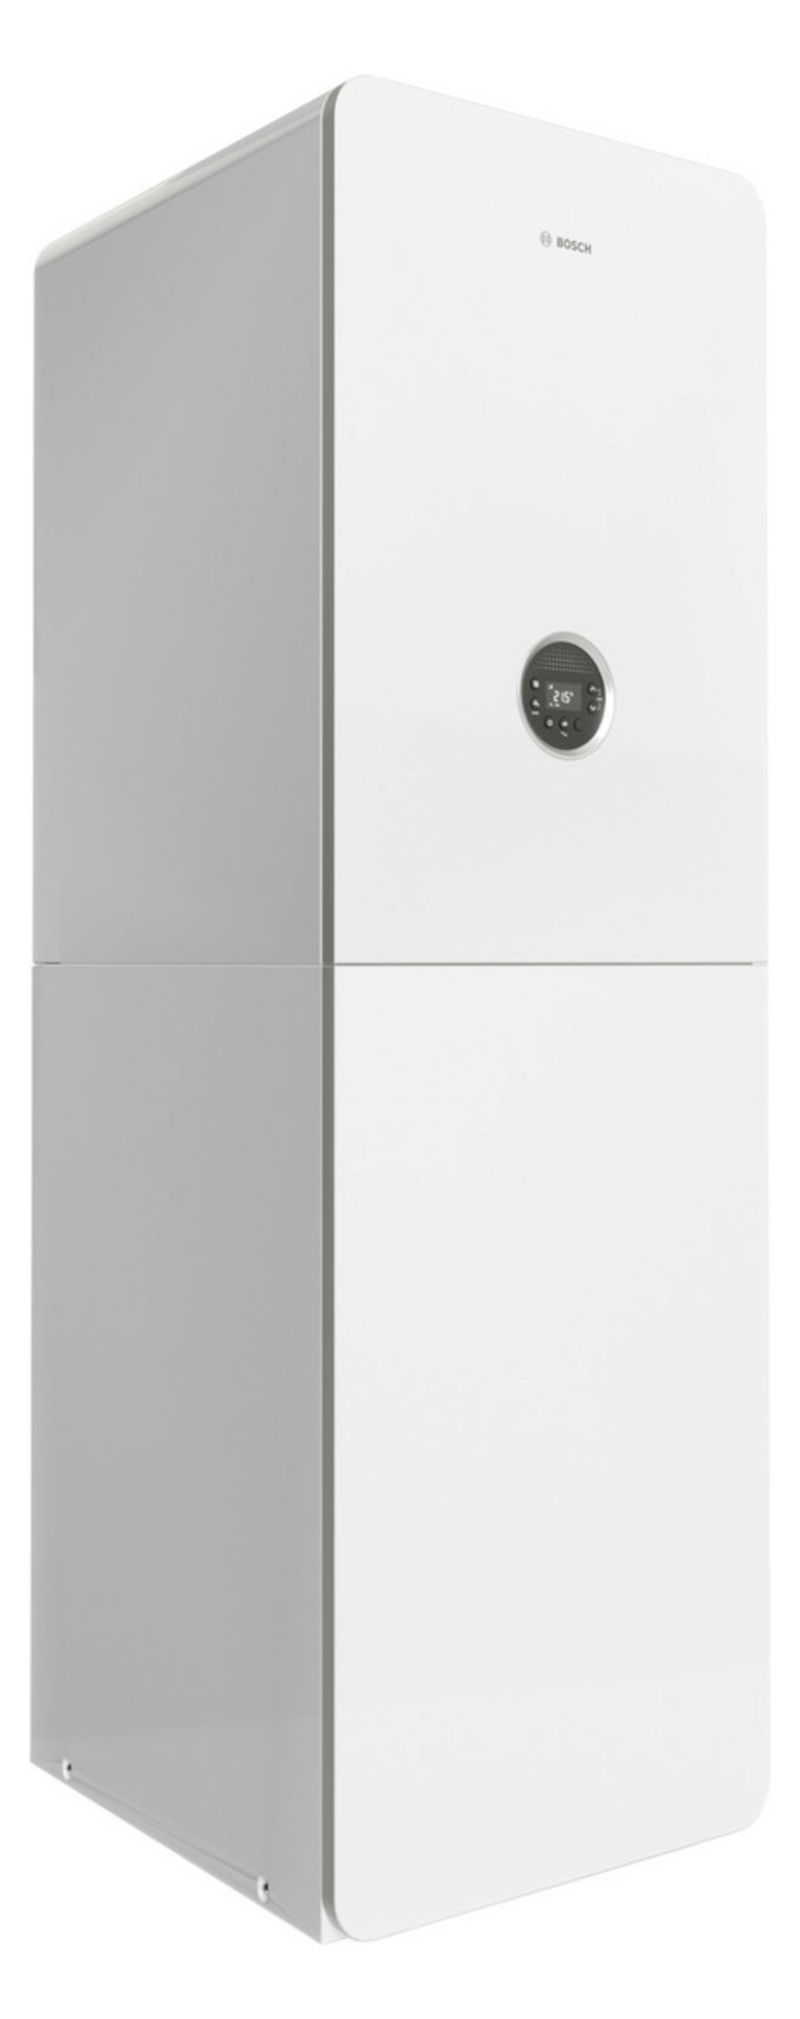 Bosch GC5300i WM 24/210SO, Gas-Brennwertgerät, Frontalansicht, auf weißem Hintergrund